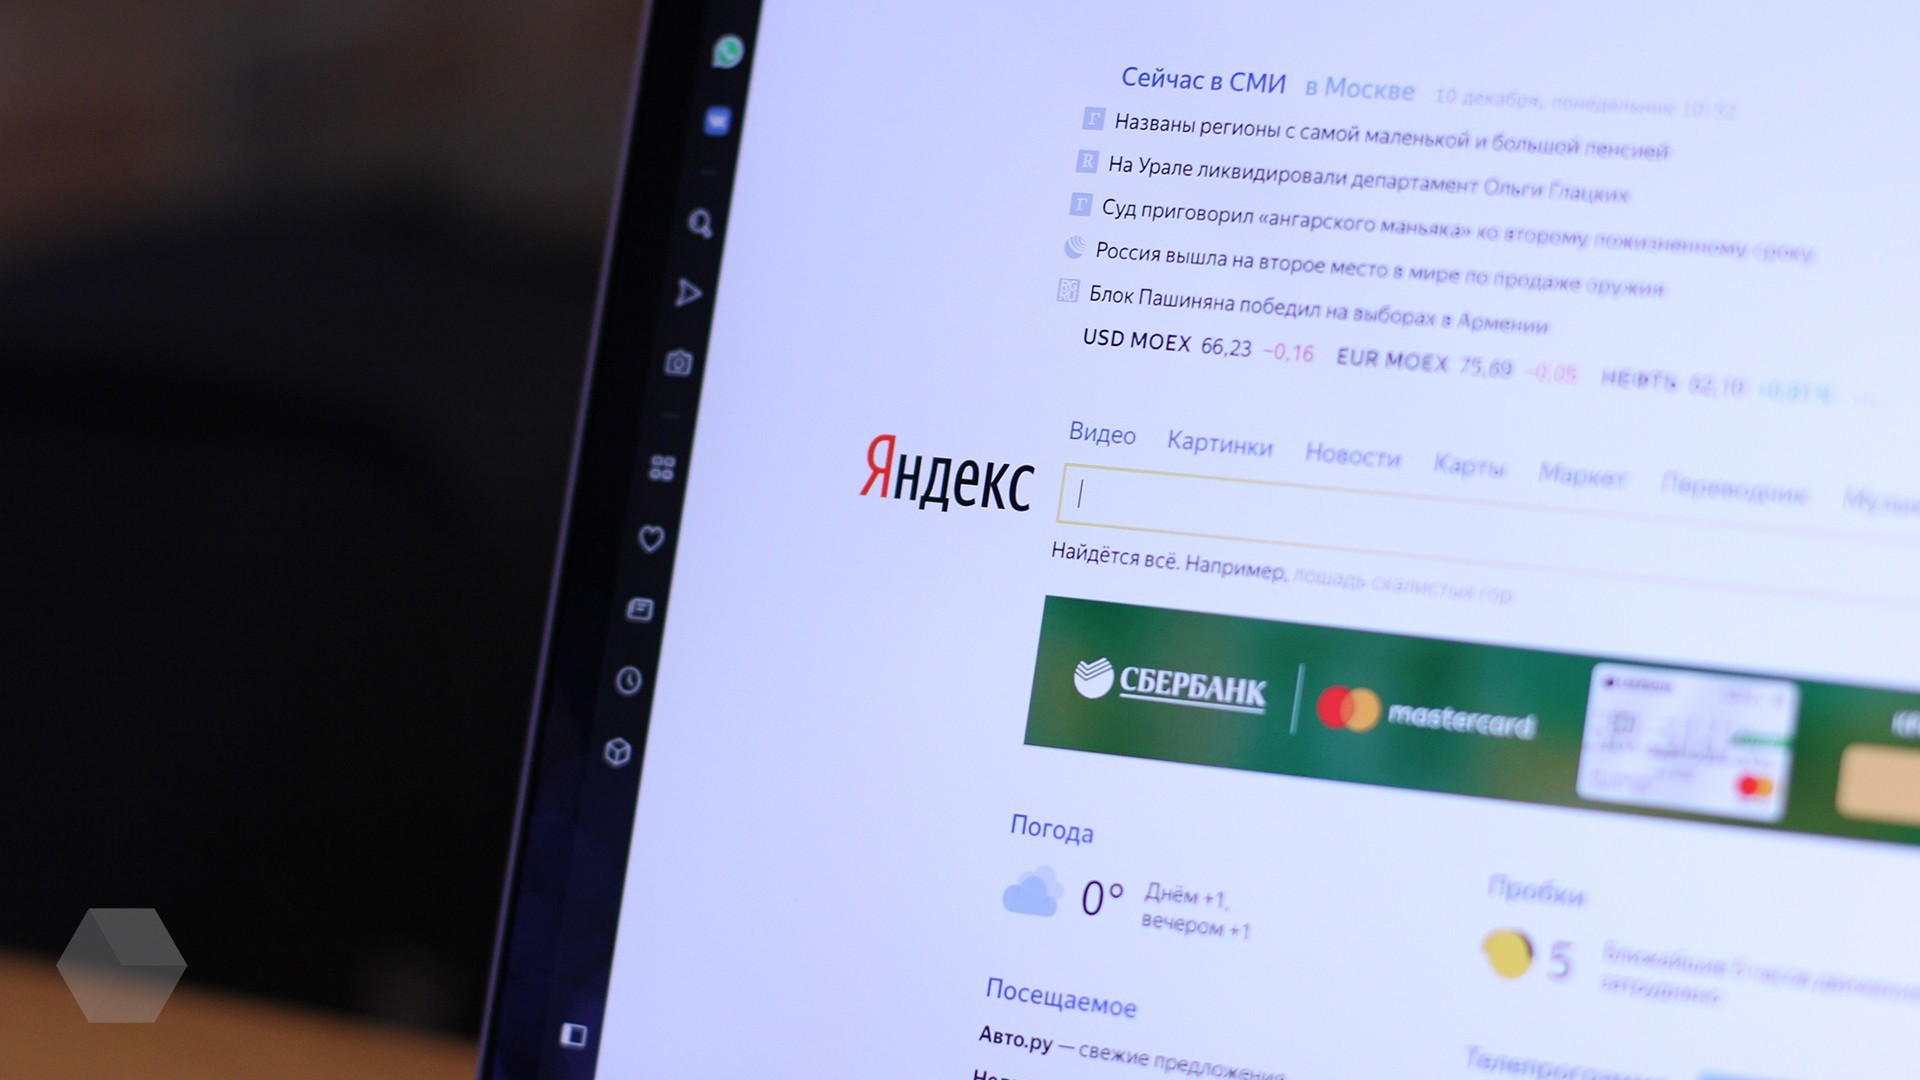 «Яндекс»: количество раздражающей рекламы в рунете упало на 98%